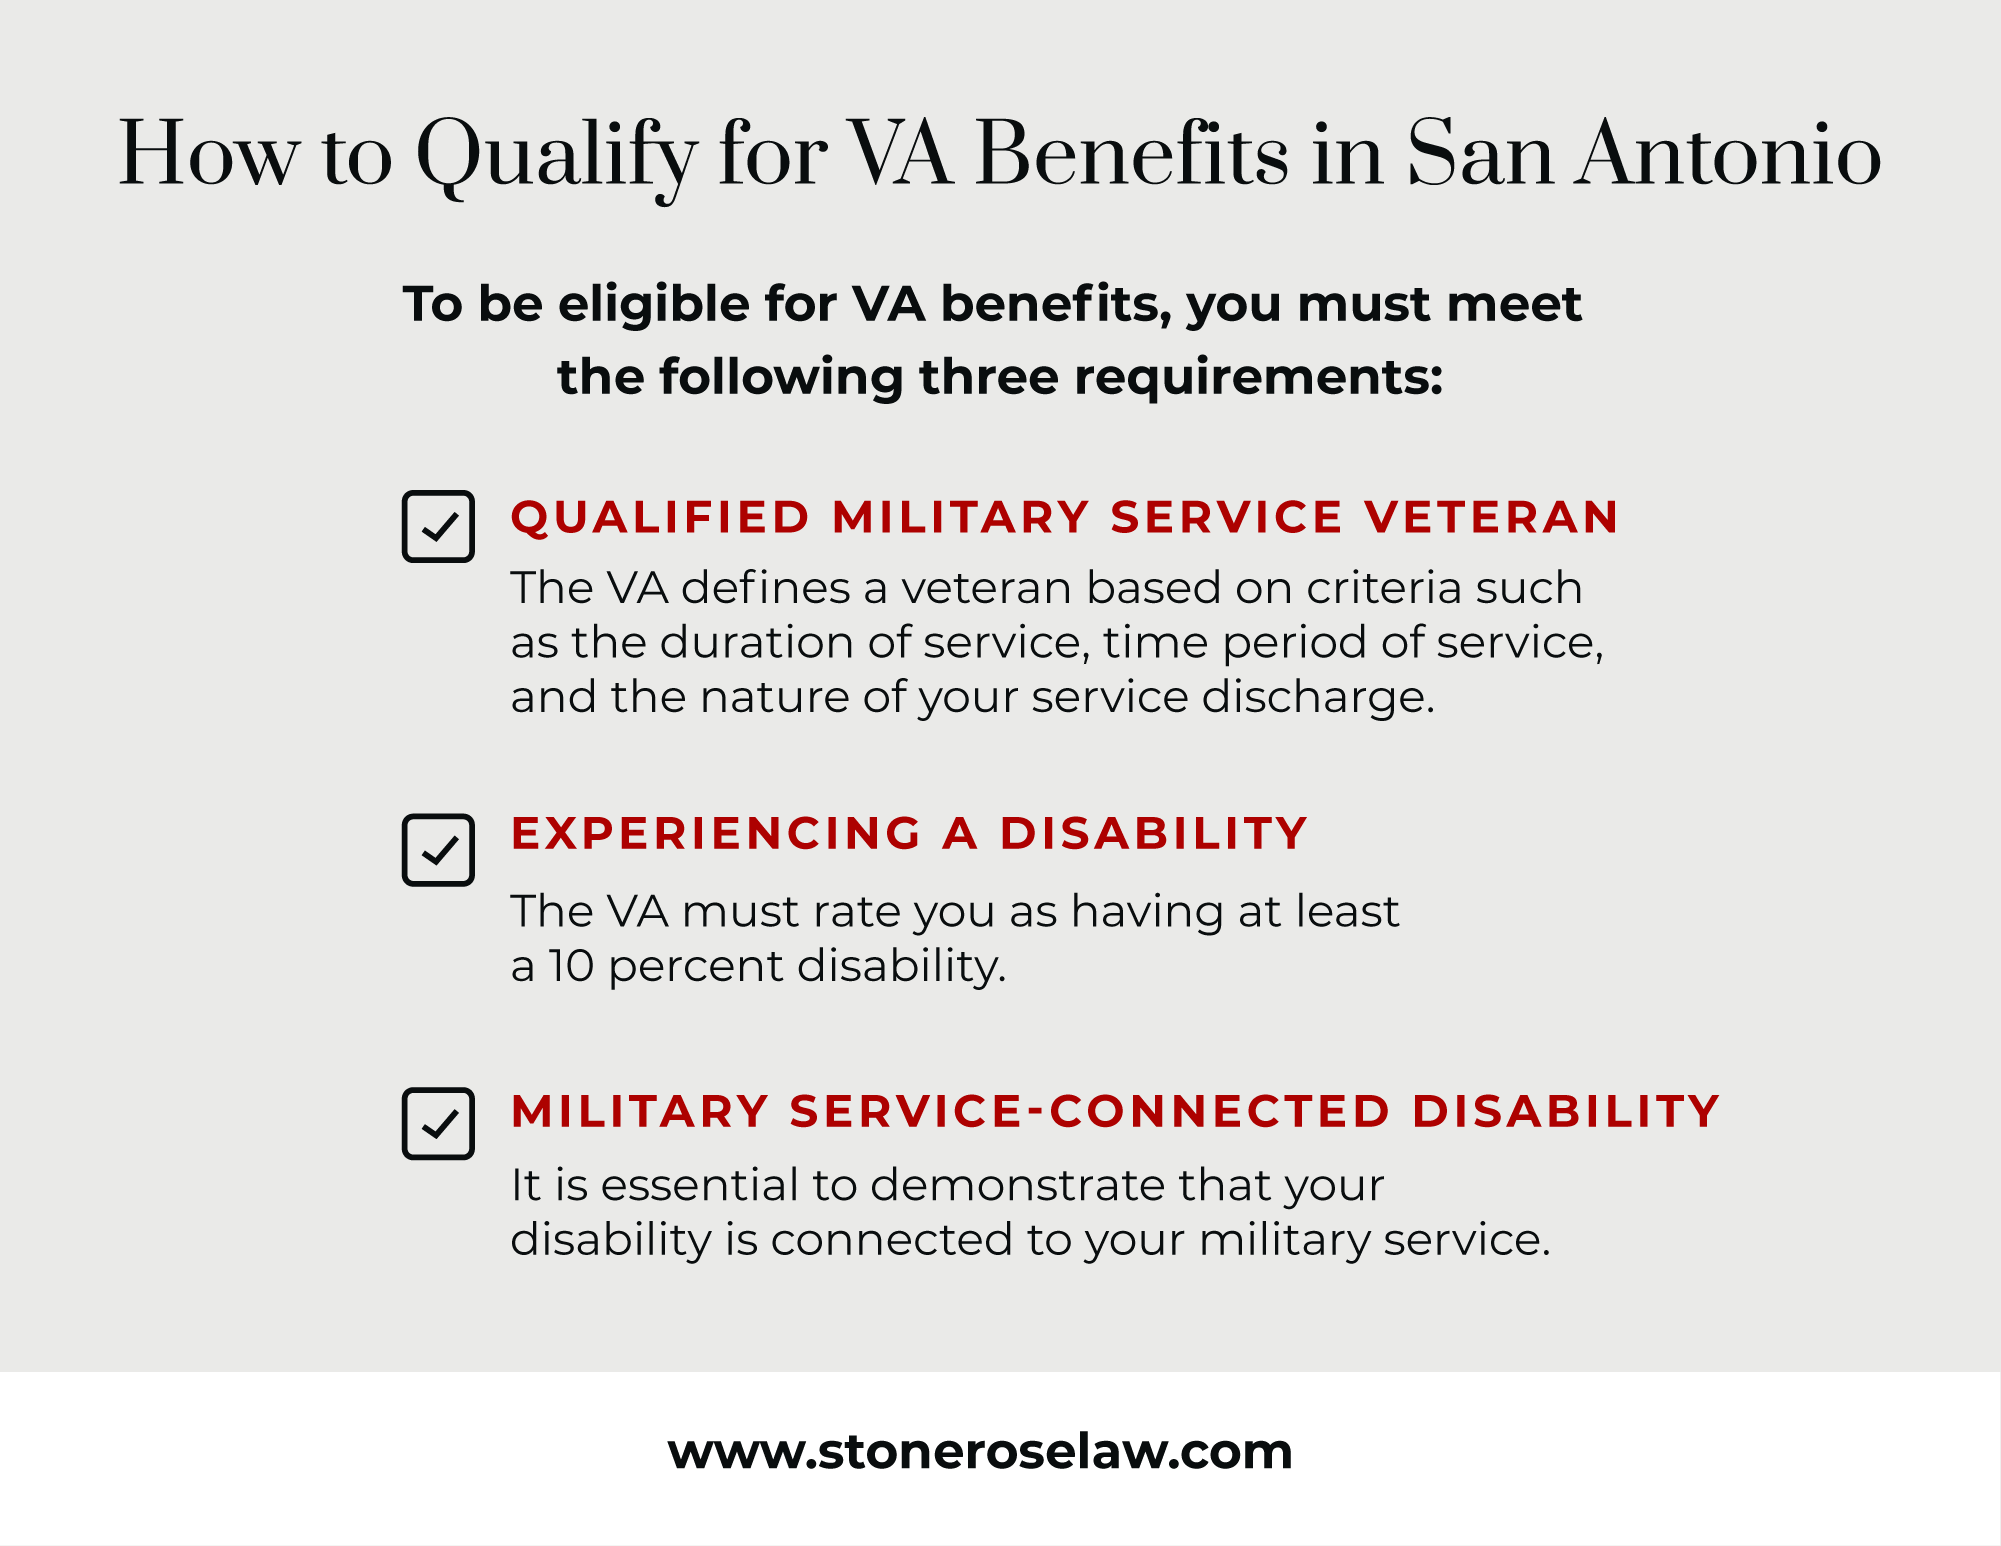 how to qualify for VA benefits in san antonio